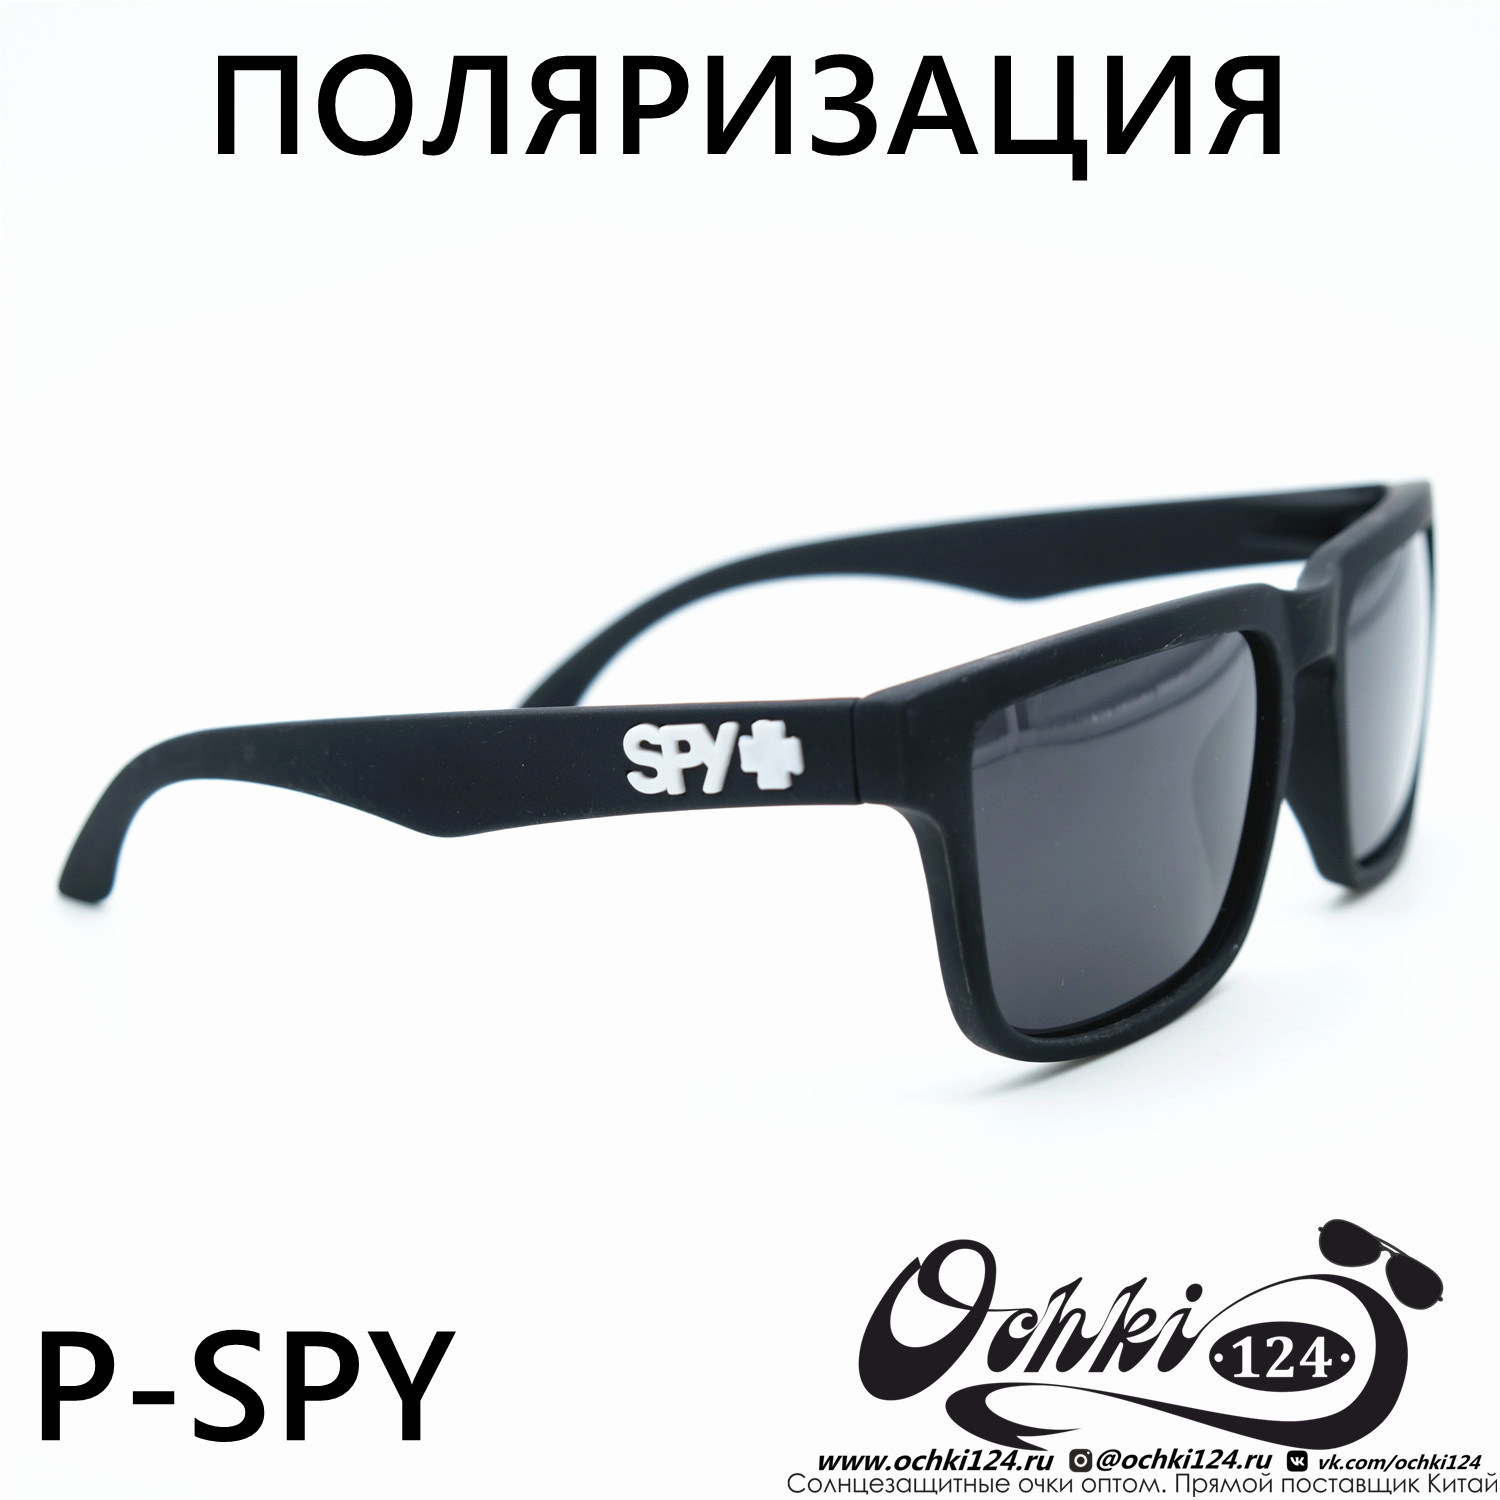  Солнцезащитные очки картинка Мужские MATRIUXT  Квадратные P-SPY-C5 